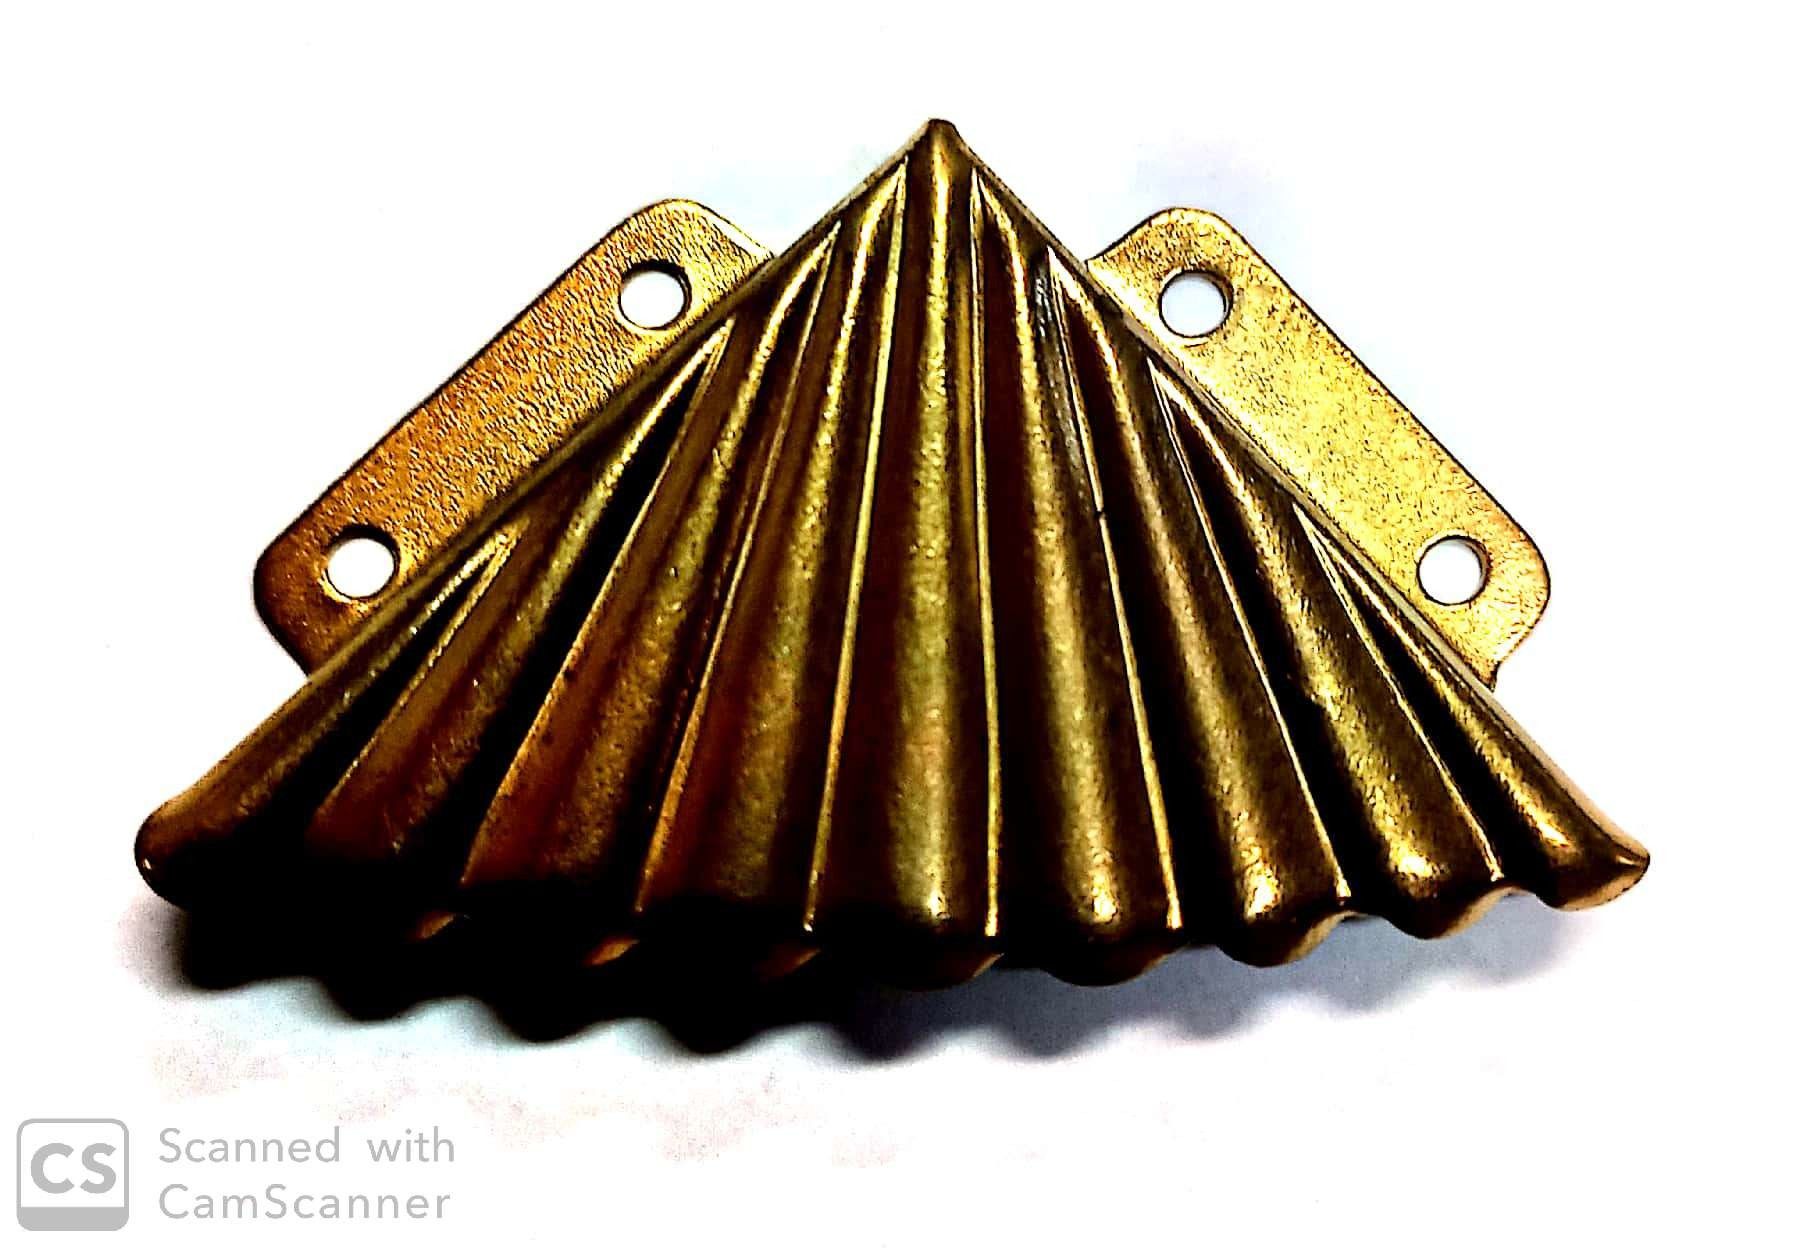 Reggispecchi a ventaglio angolare mm 55 in ferro ottonato